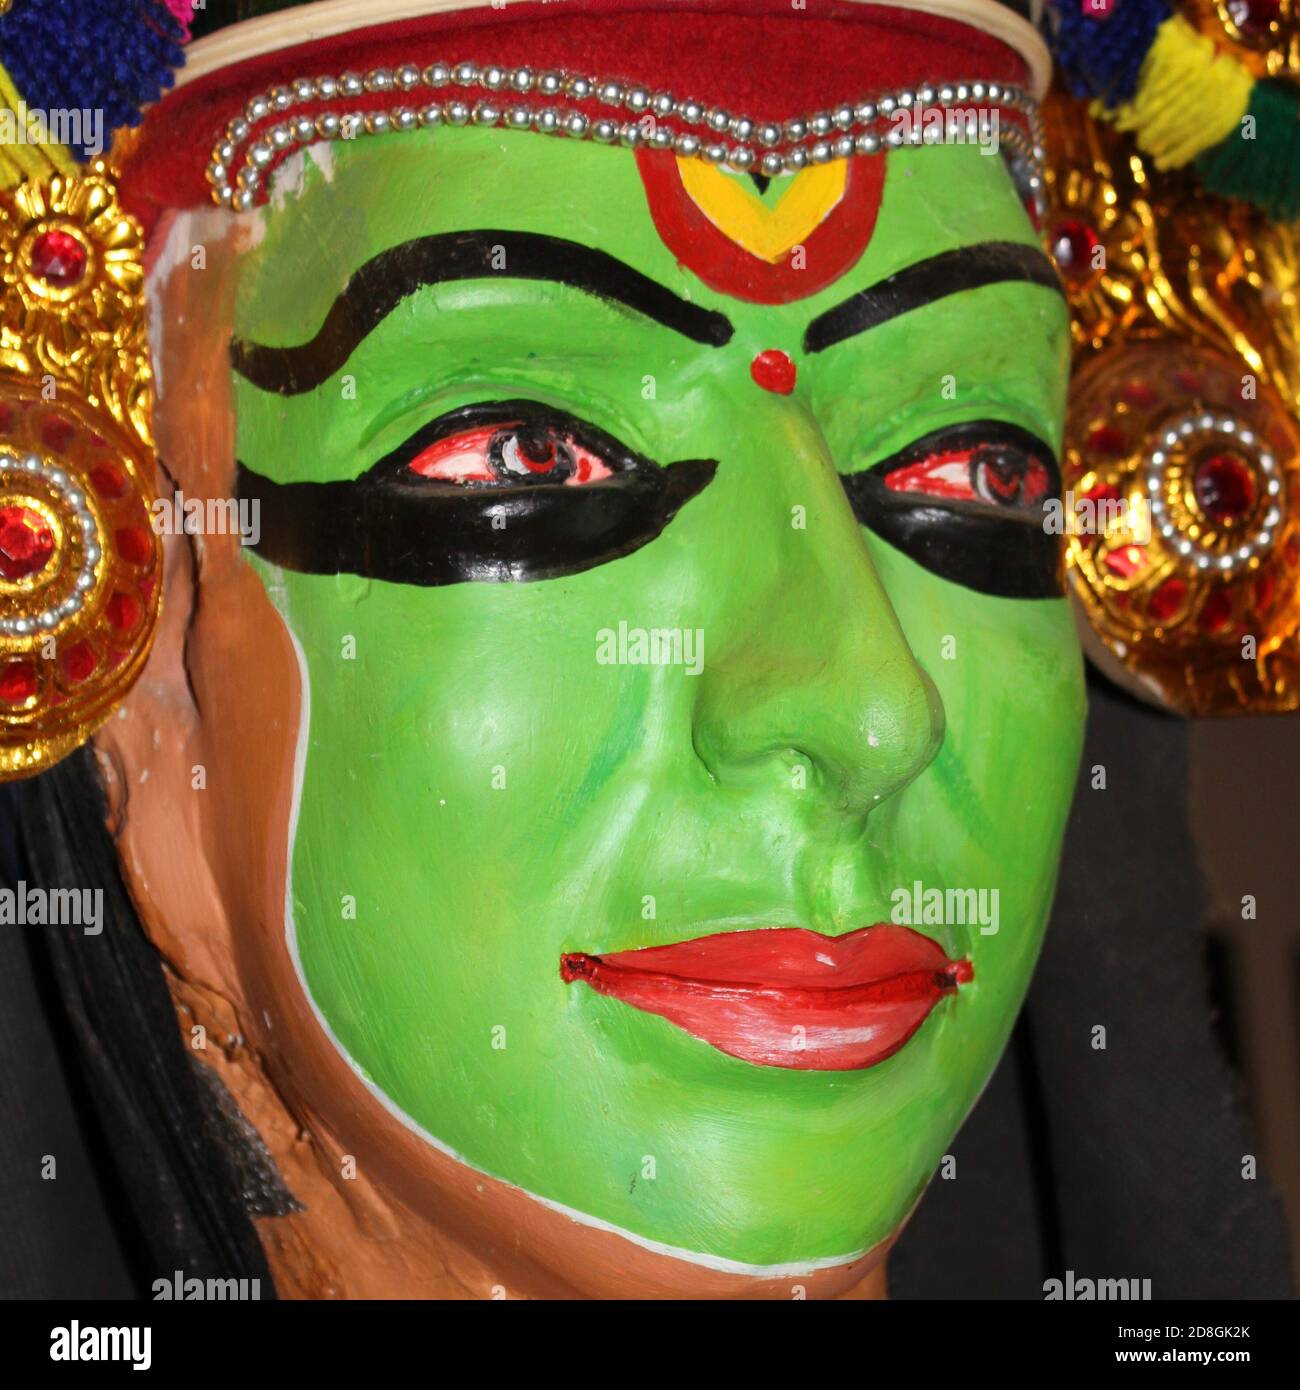 Faces of models seen at the folk art museum, Kerala. Stock Photo